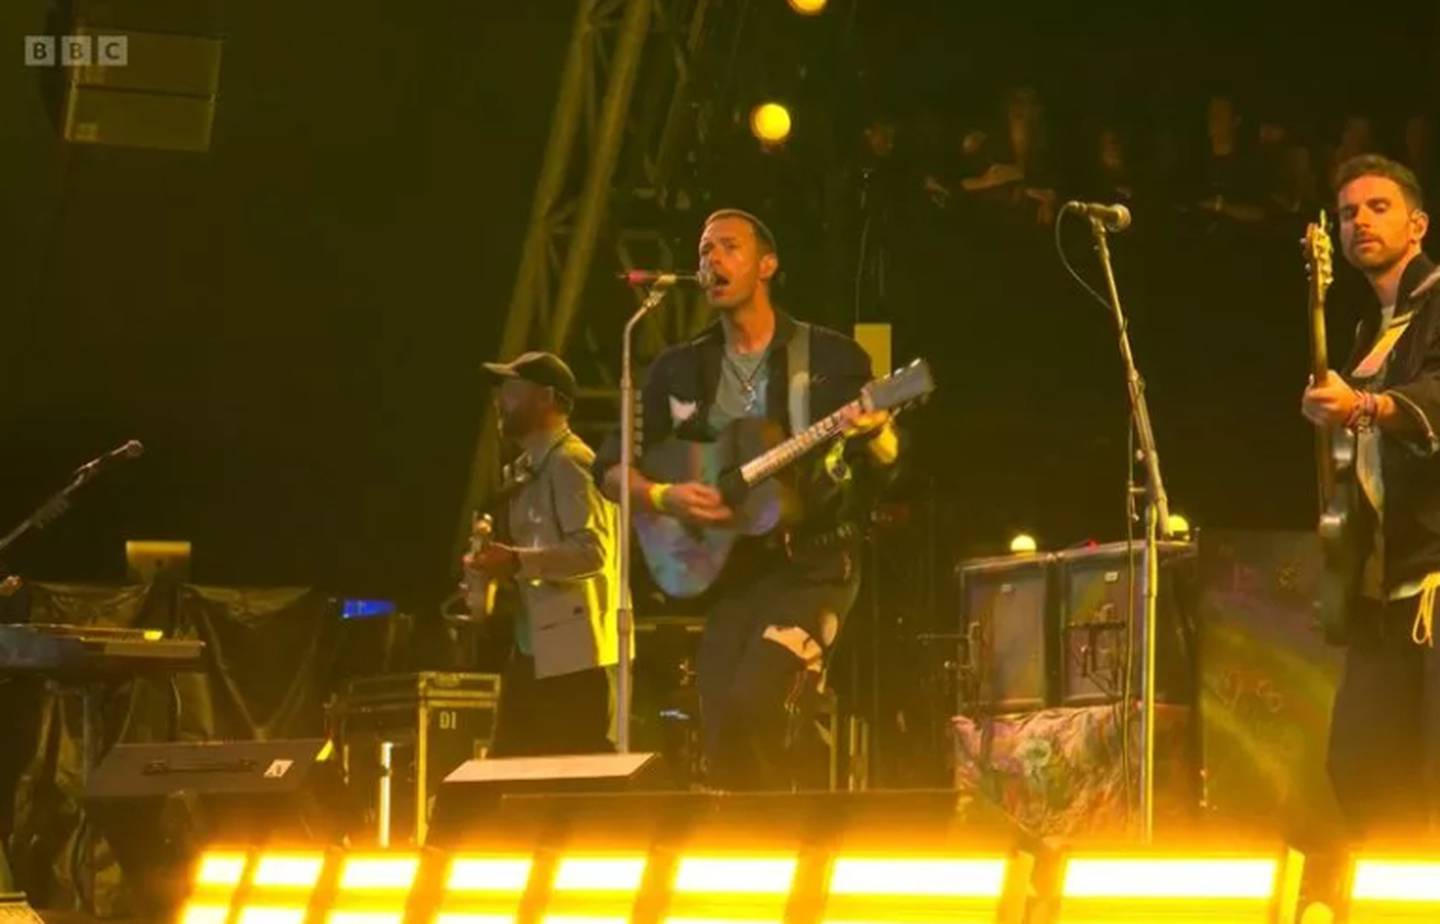 El actor Michael J Fox se robó el show durante la presentación de Coldplay en un festival en Inglaterra.